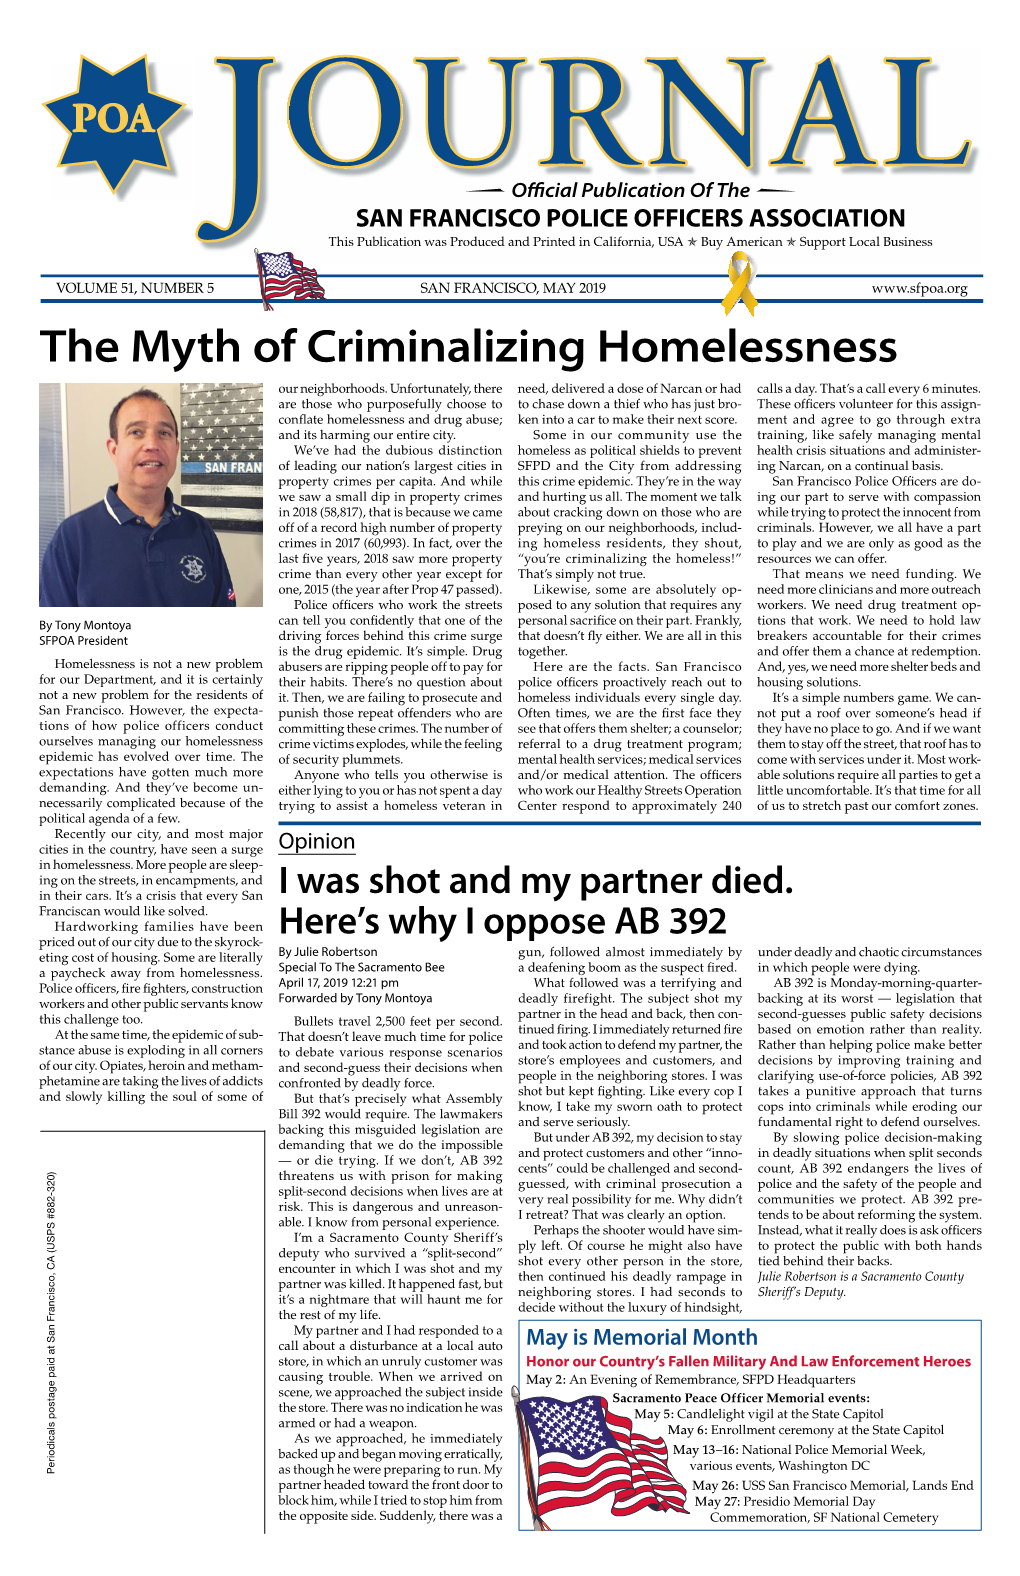 The Myth of Criminalizing Homelessness